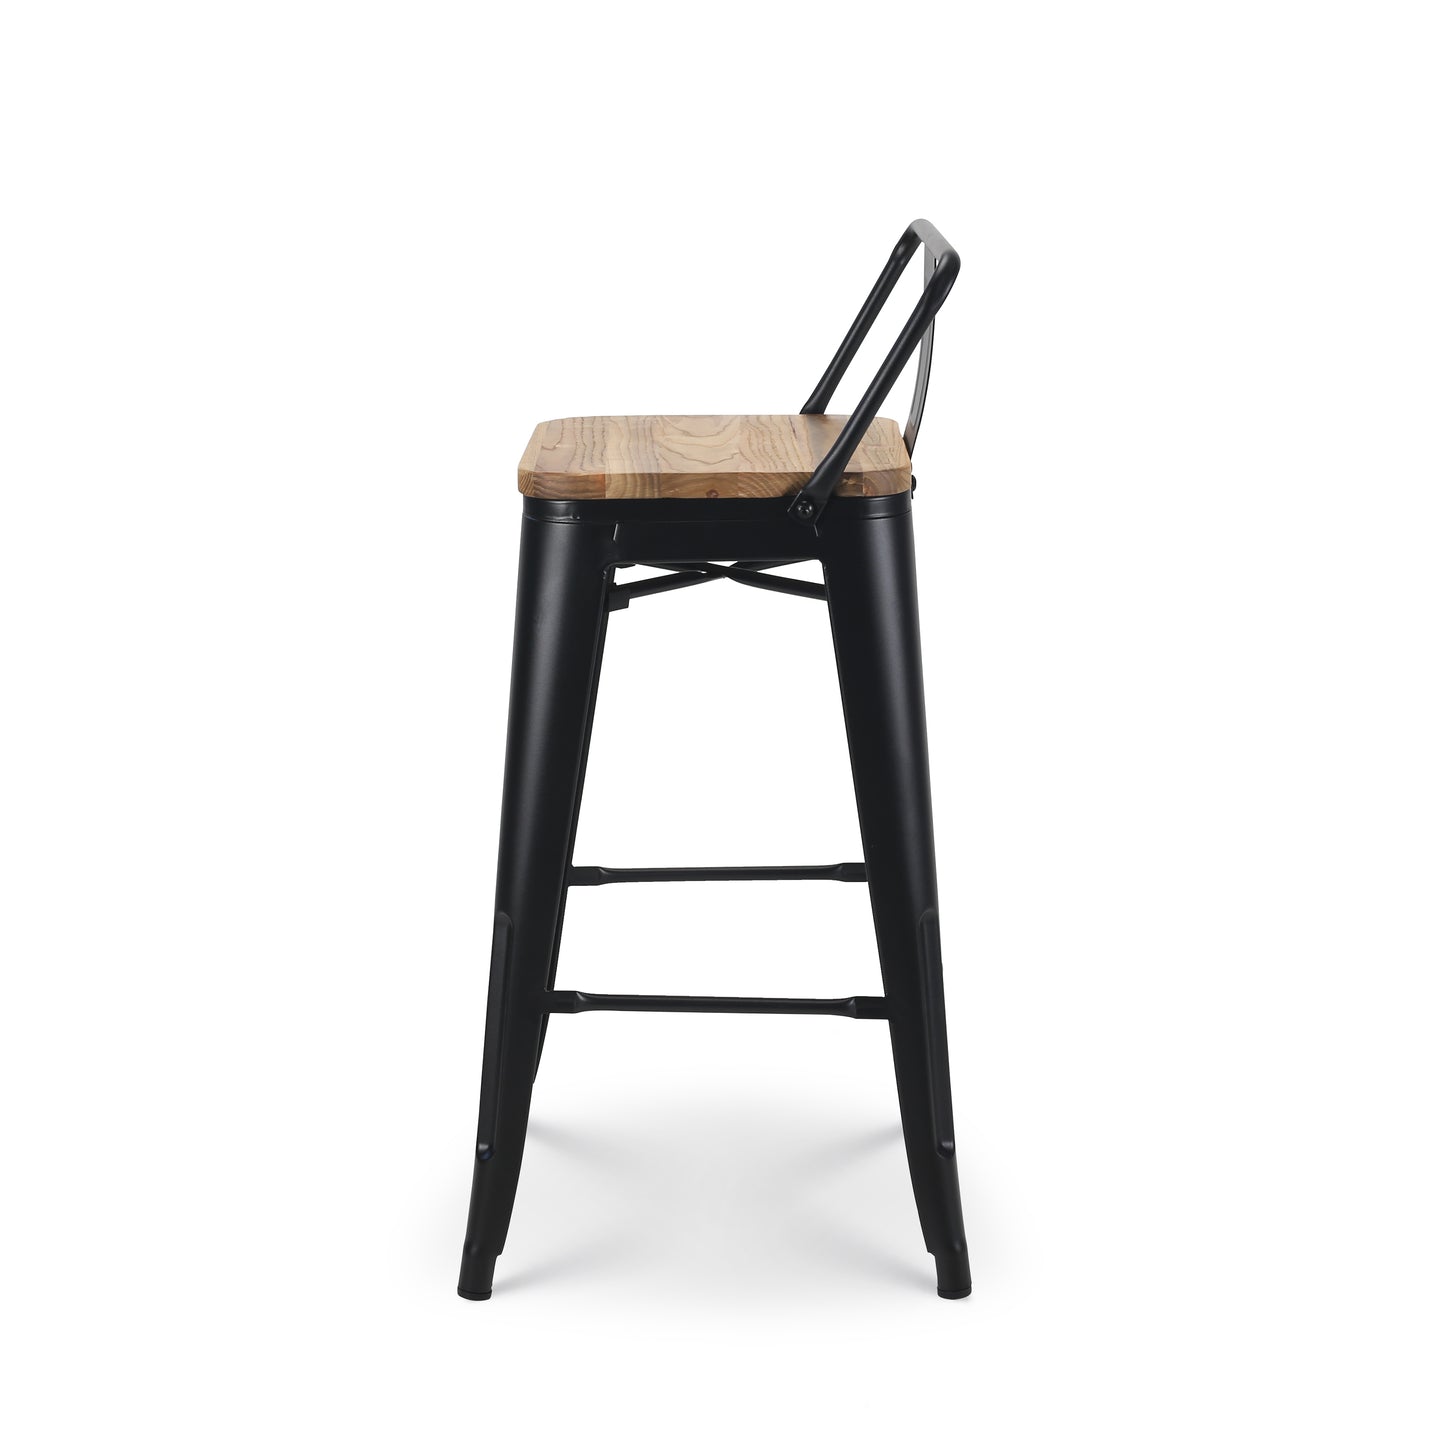 Tabouret de bar en métal noir mat style industriel avec dossier et assise en bois clair - Hauteur 66cm